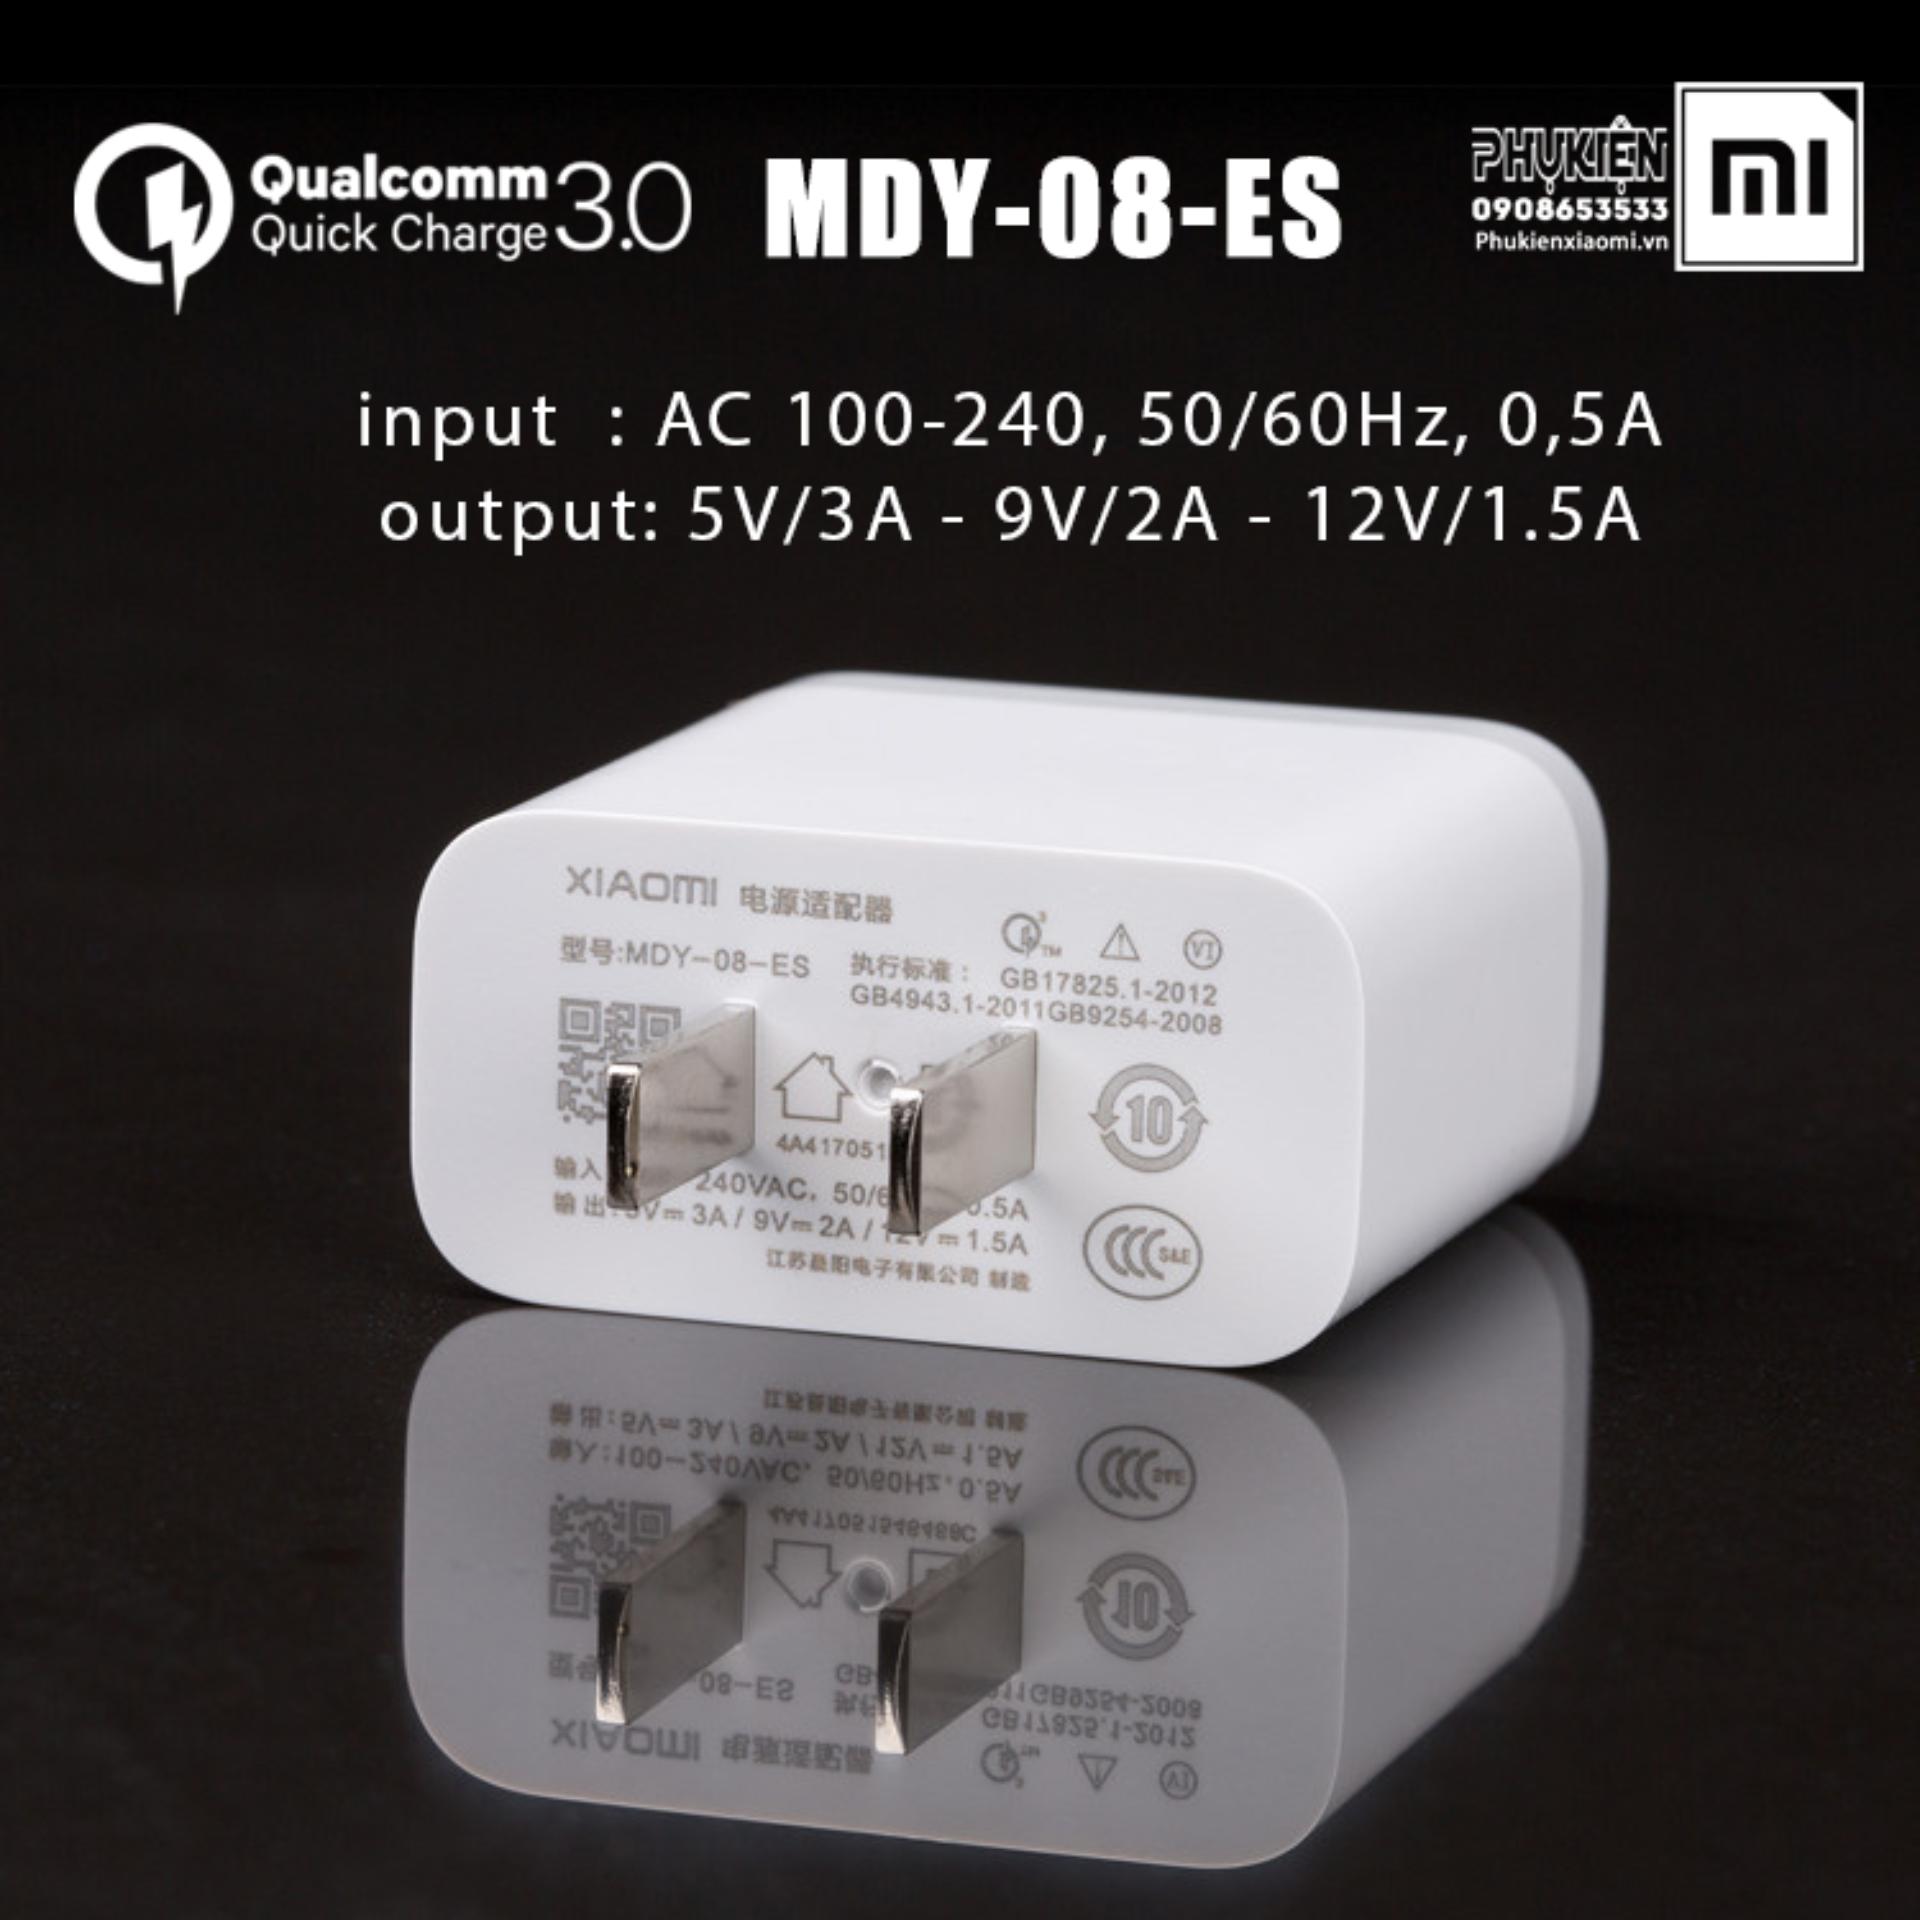 Củ sạc nhanh Quick Charge 3.0 Xiaomi MDY-08-ES theo máy Mi6 - hàng nhập khẩu